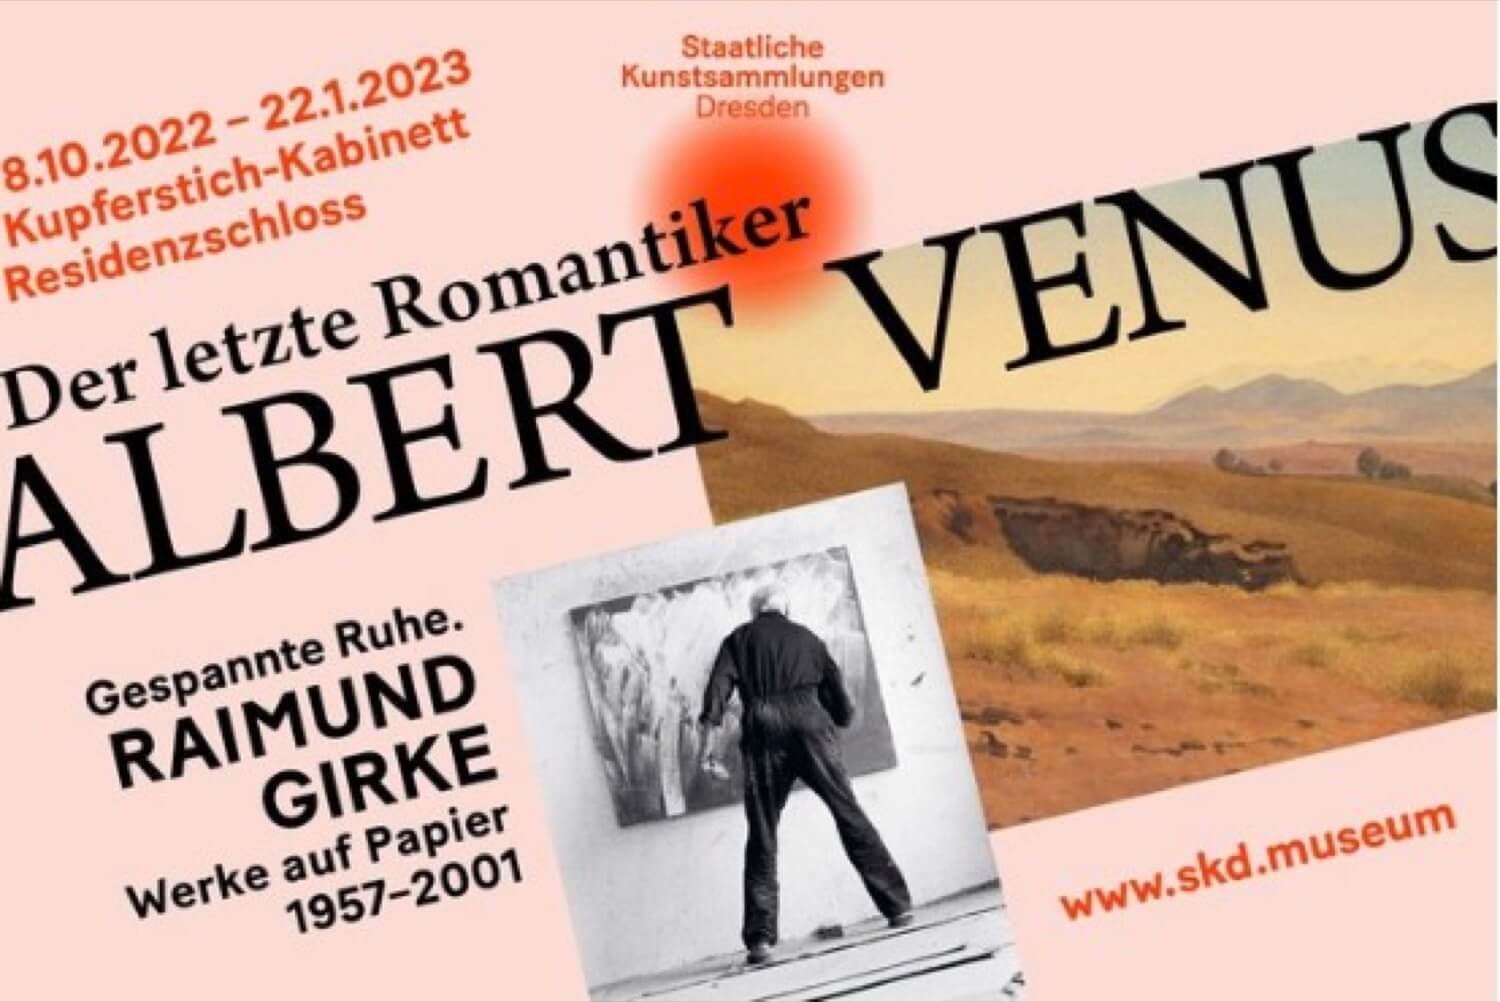 ALBERT VENUS. Der letzte Romantiker RAIMUND GIRKE. Gespannte Ruhe Kupferstich-Kabinett Dresden